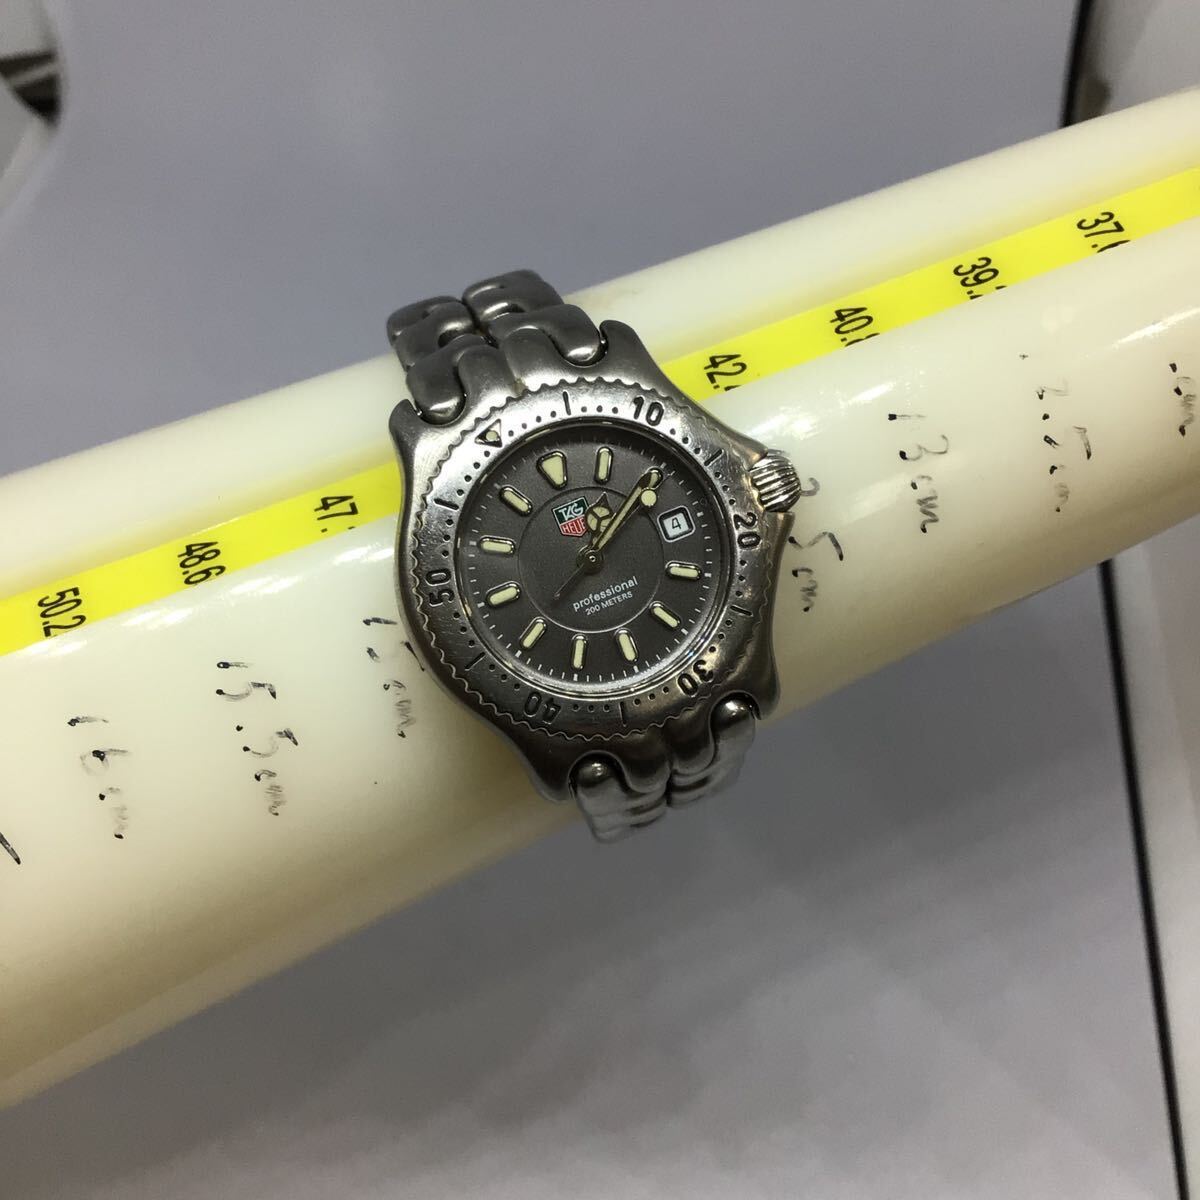 タグホイヤー セル 腕時計 デイト 文字盤黒 シルバー色 WG1313-0 TAG HEUER の画像2